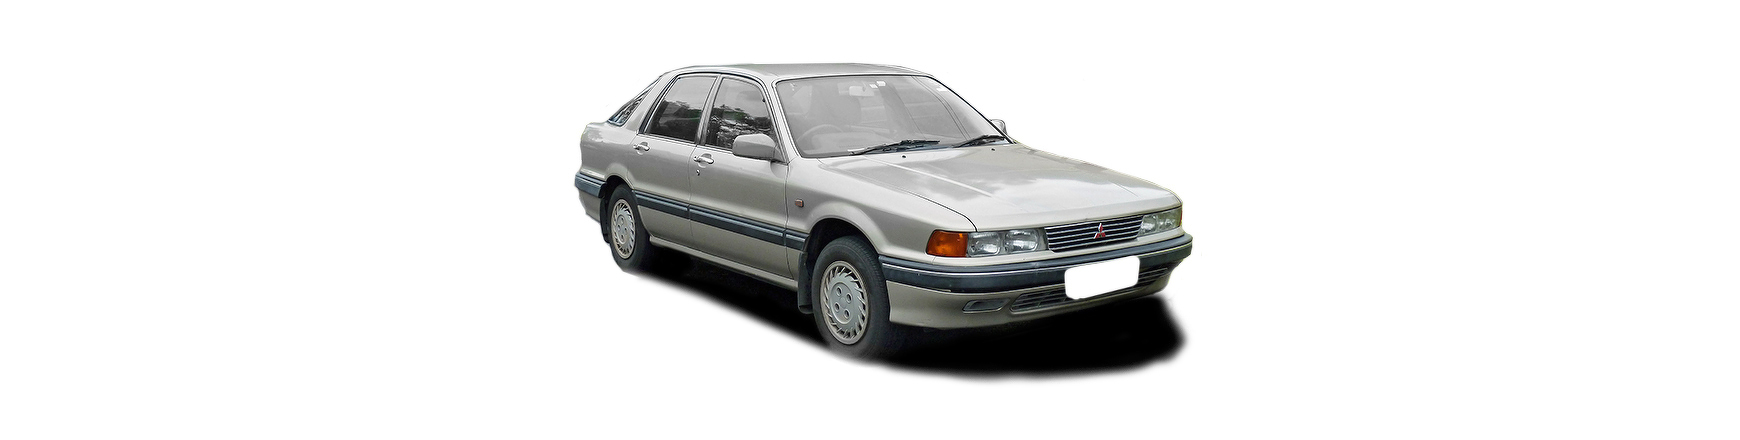 Piezas y Recambios de Mitsubishi Galant de 1989 a 1992 | Veramauto.es